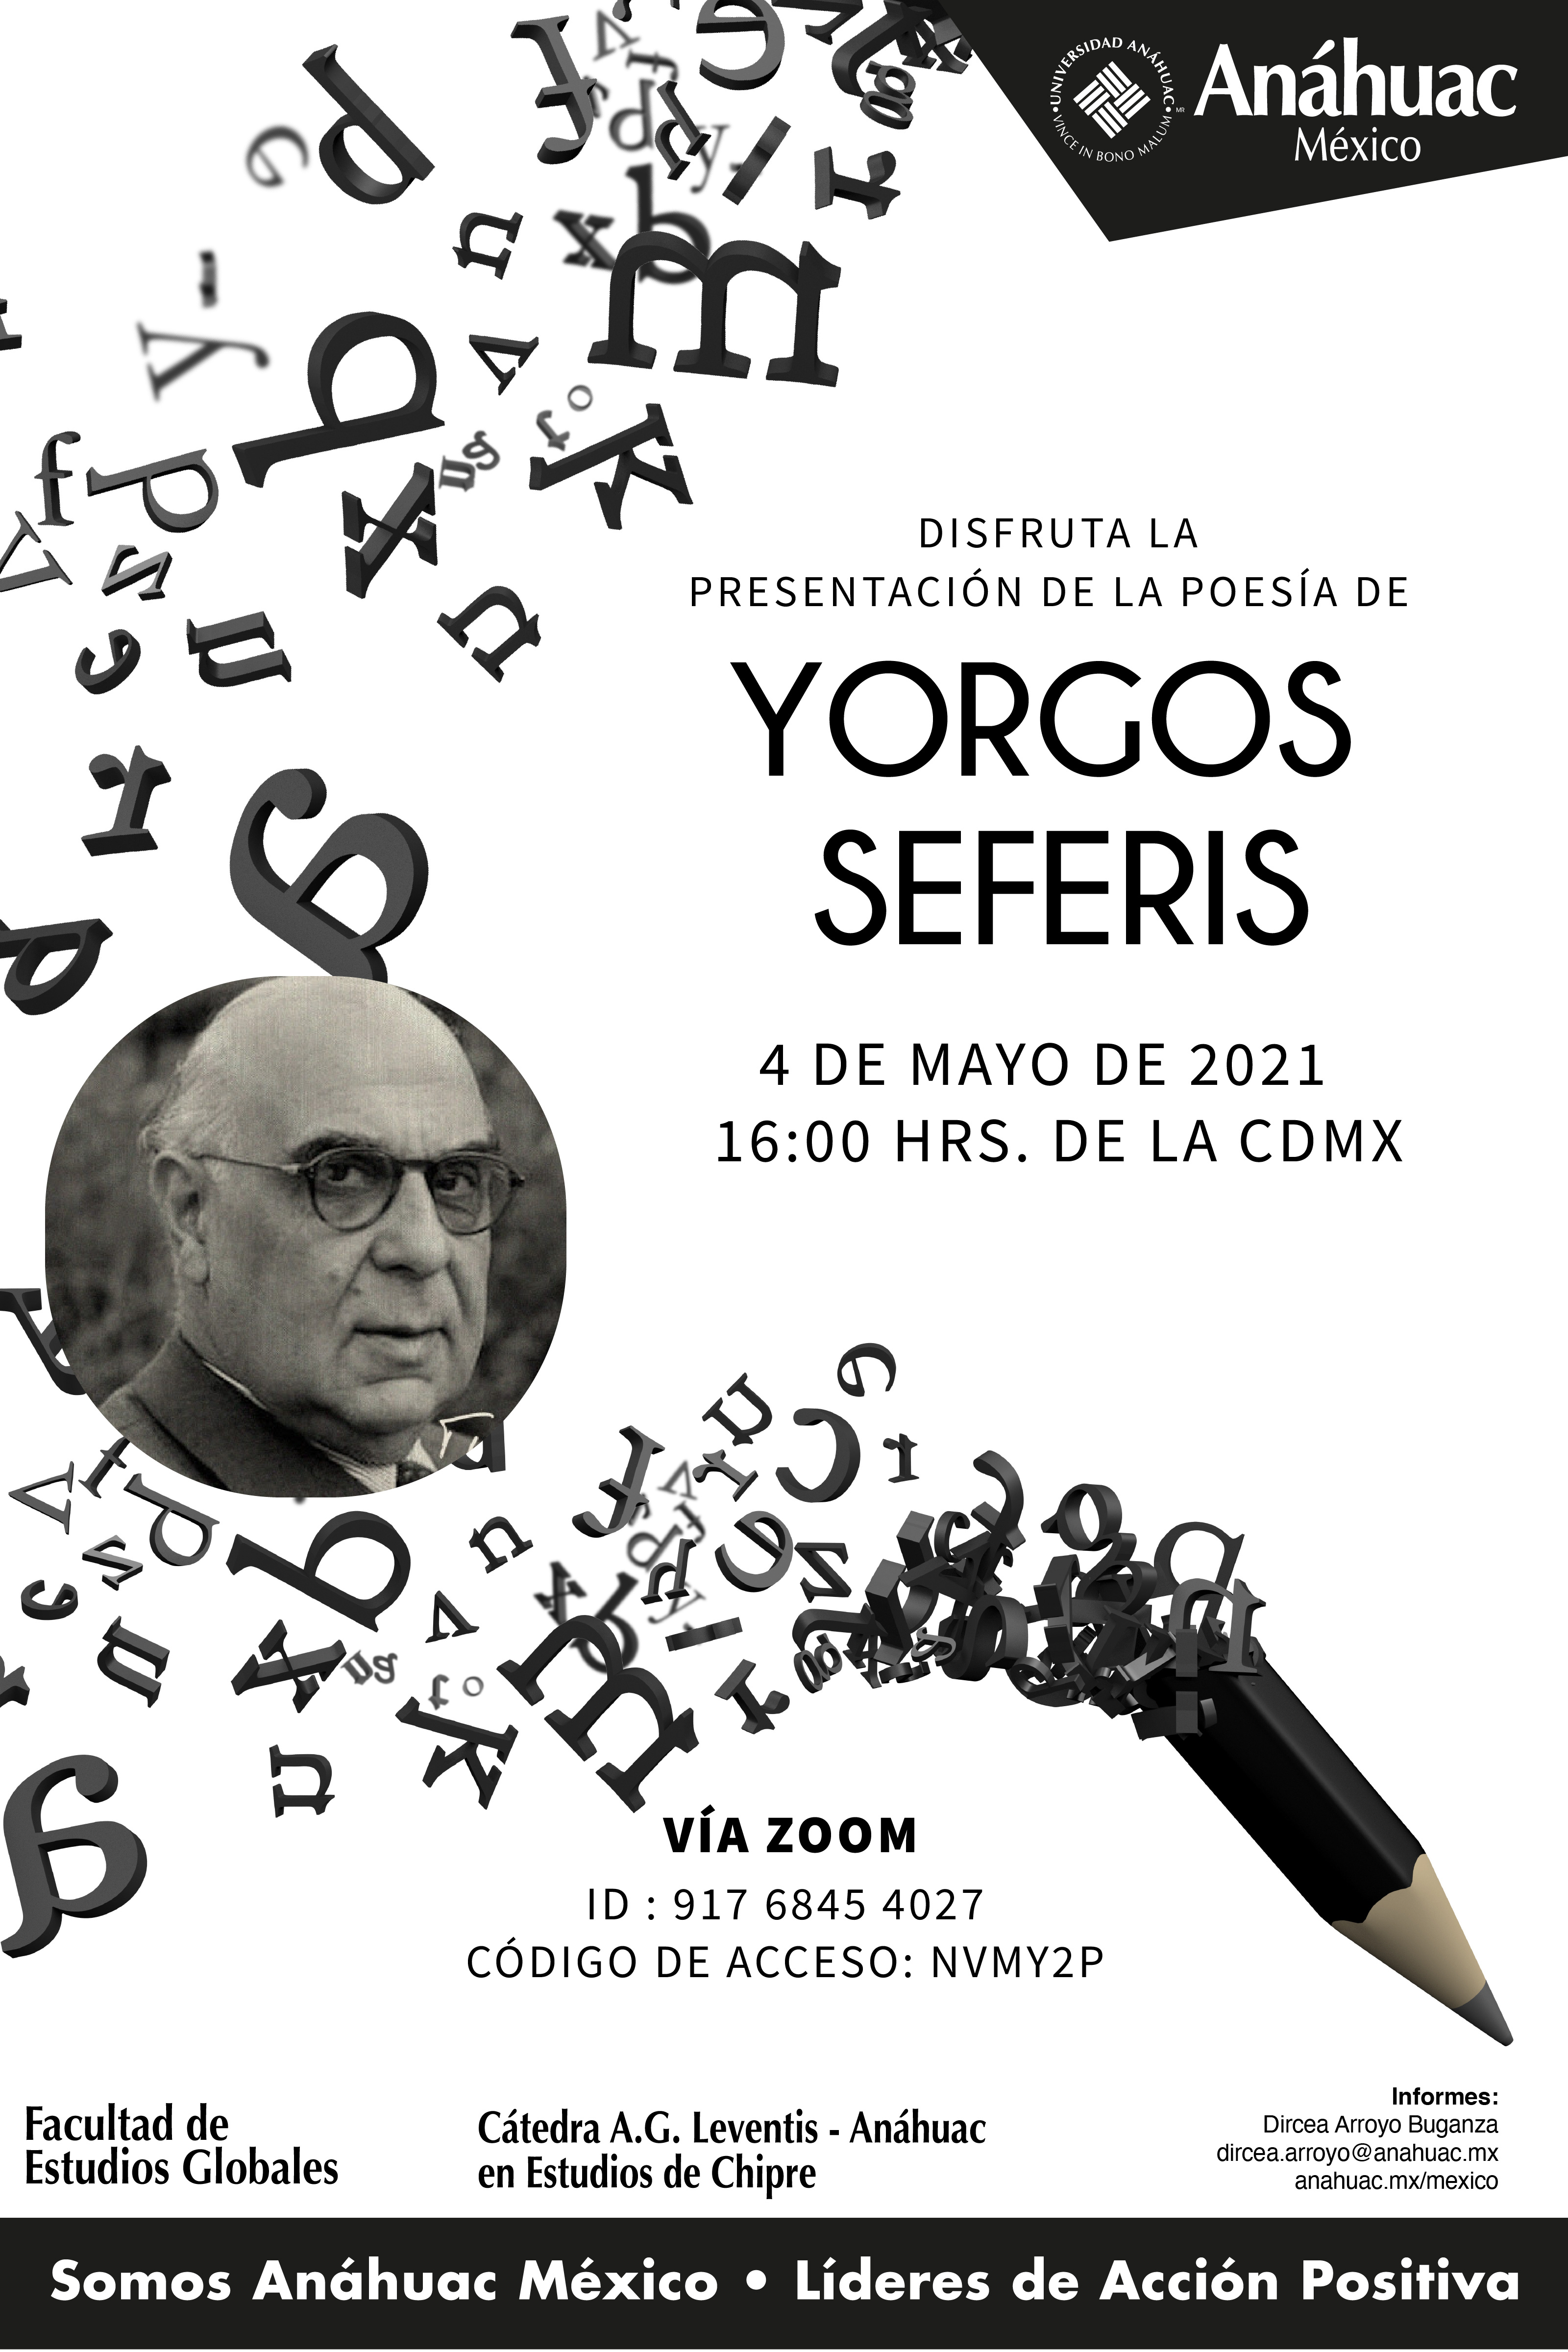 Disfruta la presentación de la poesía de Yorgos Seferis